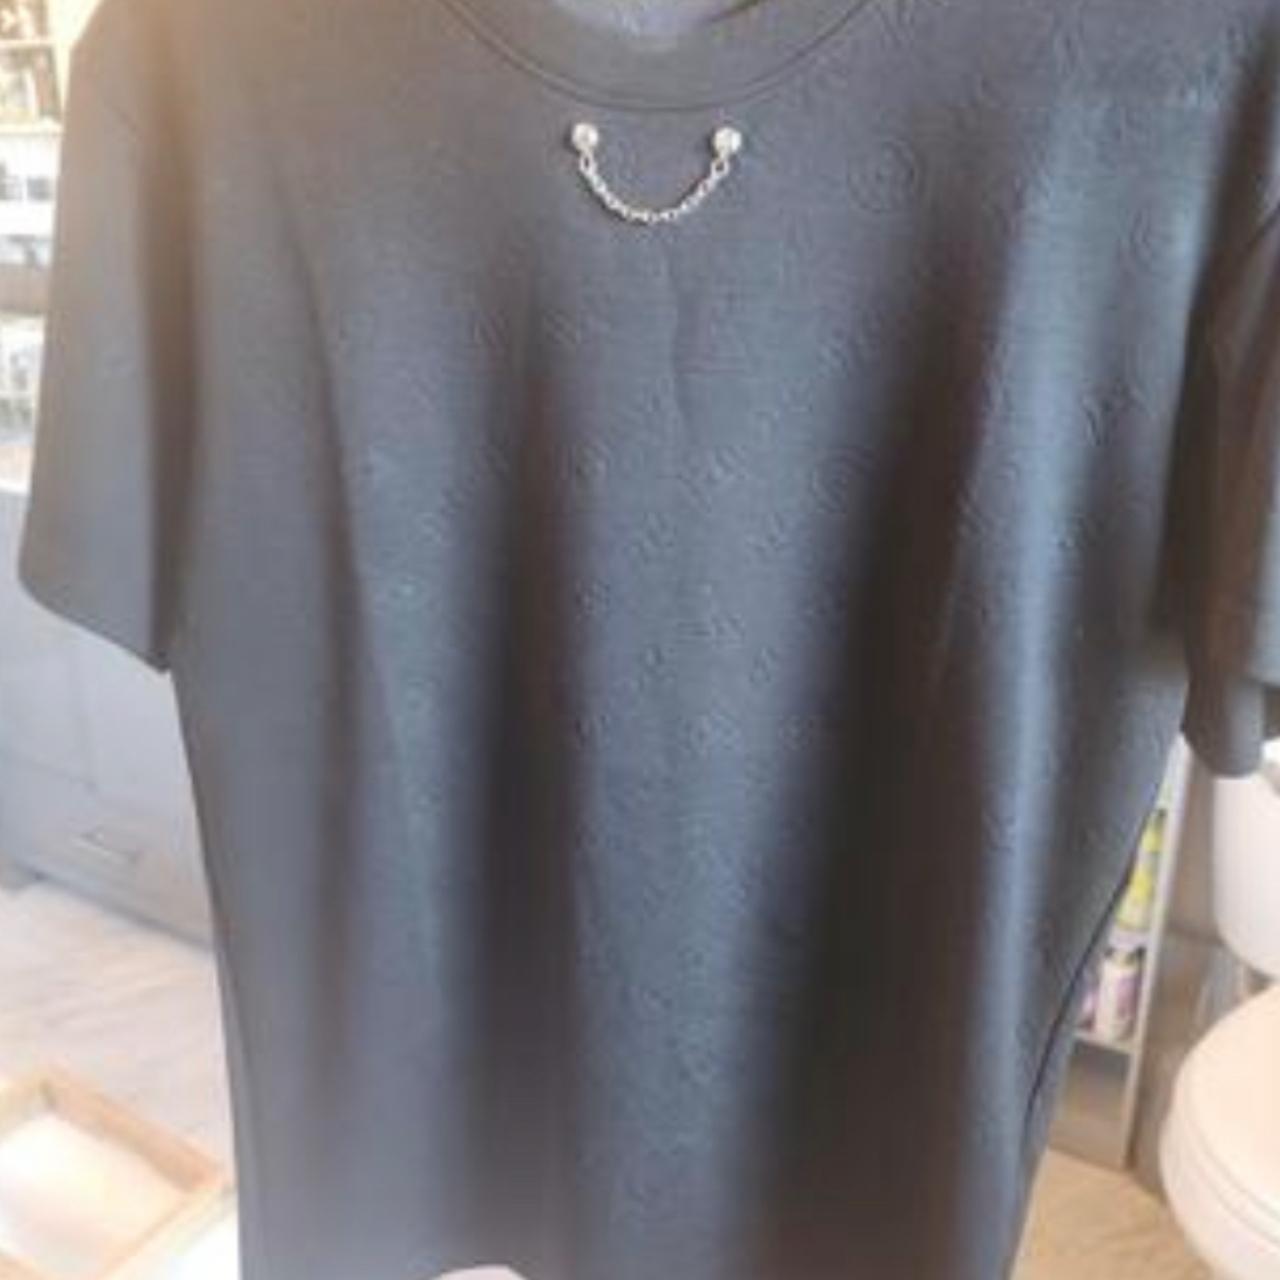 Louis Vuitton T Shirt Size Medium Authentic Comes - Depop